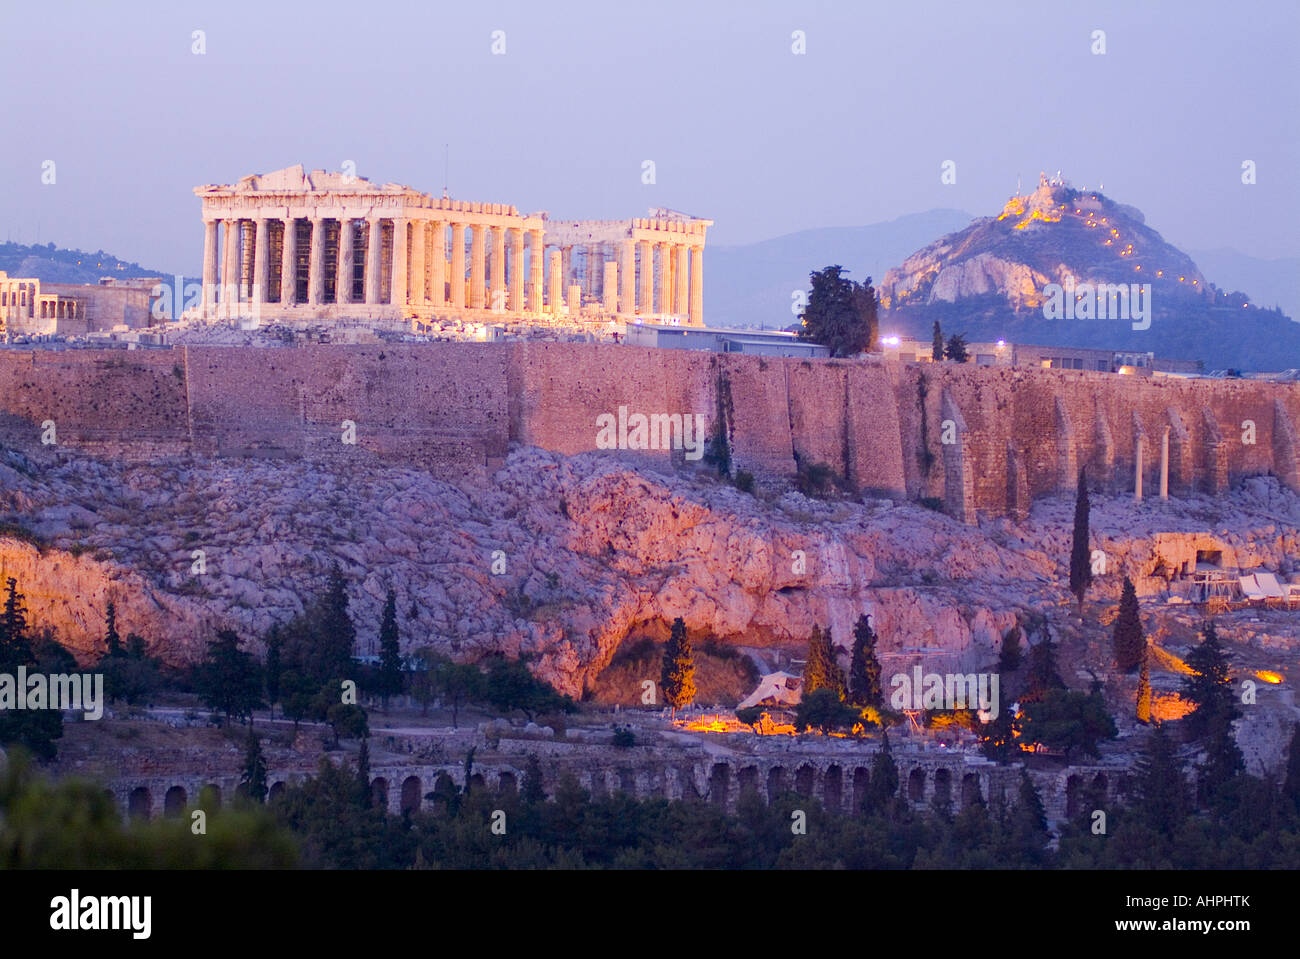 The Parthenon, Athens, Greece Stock Photo